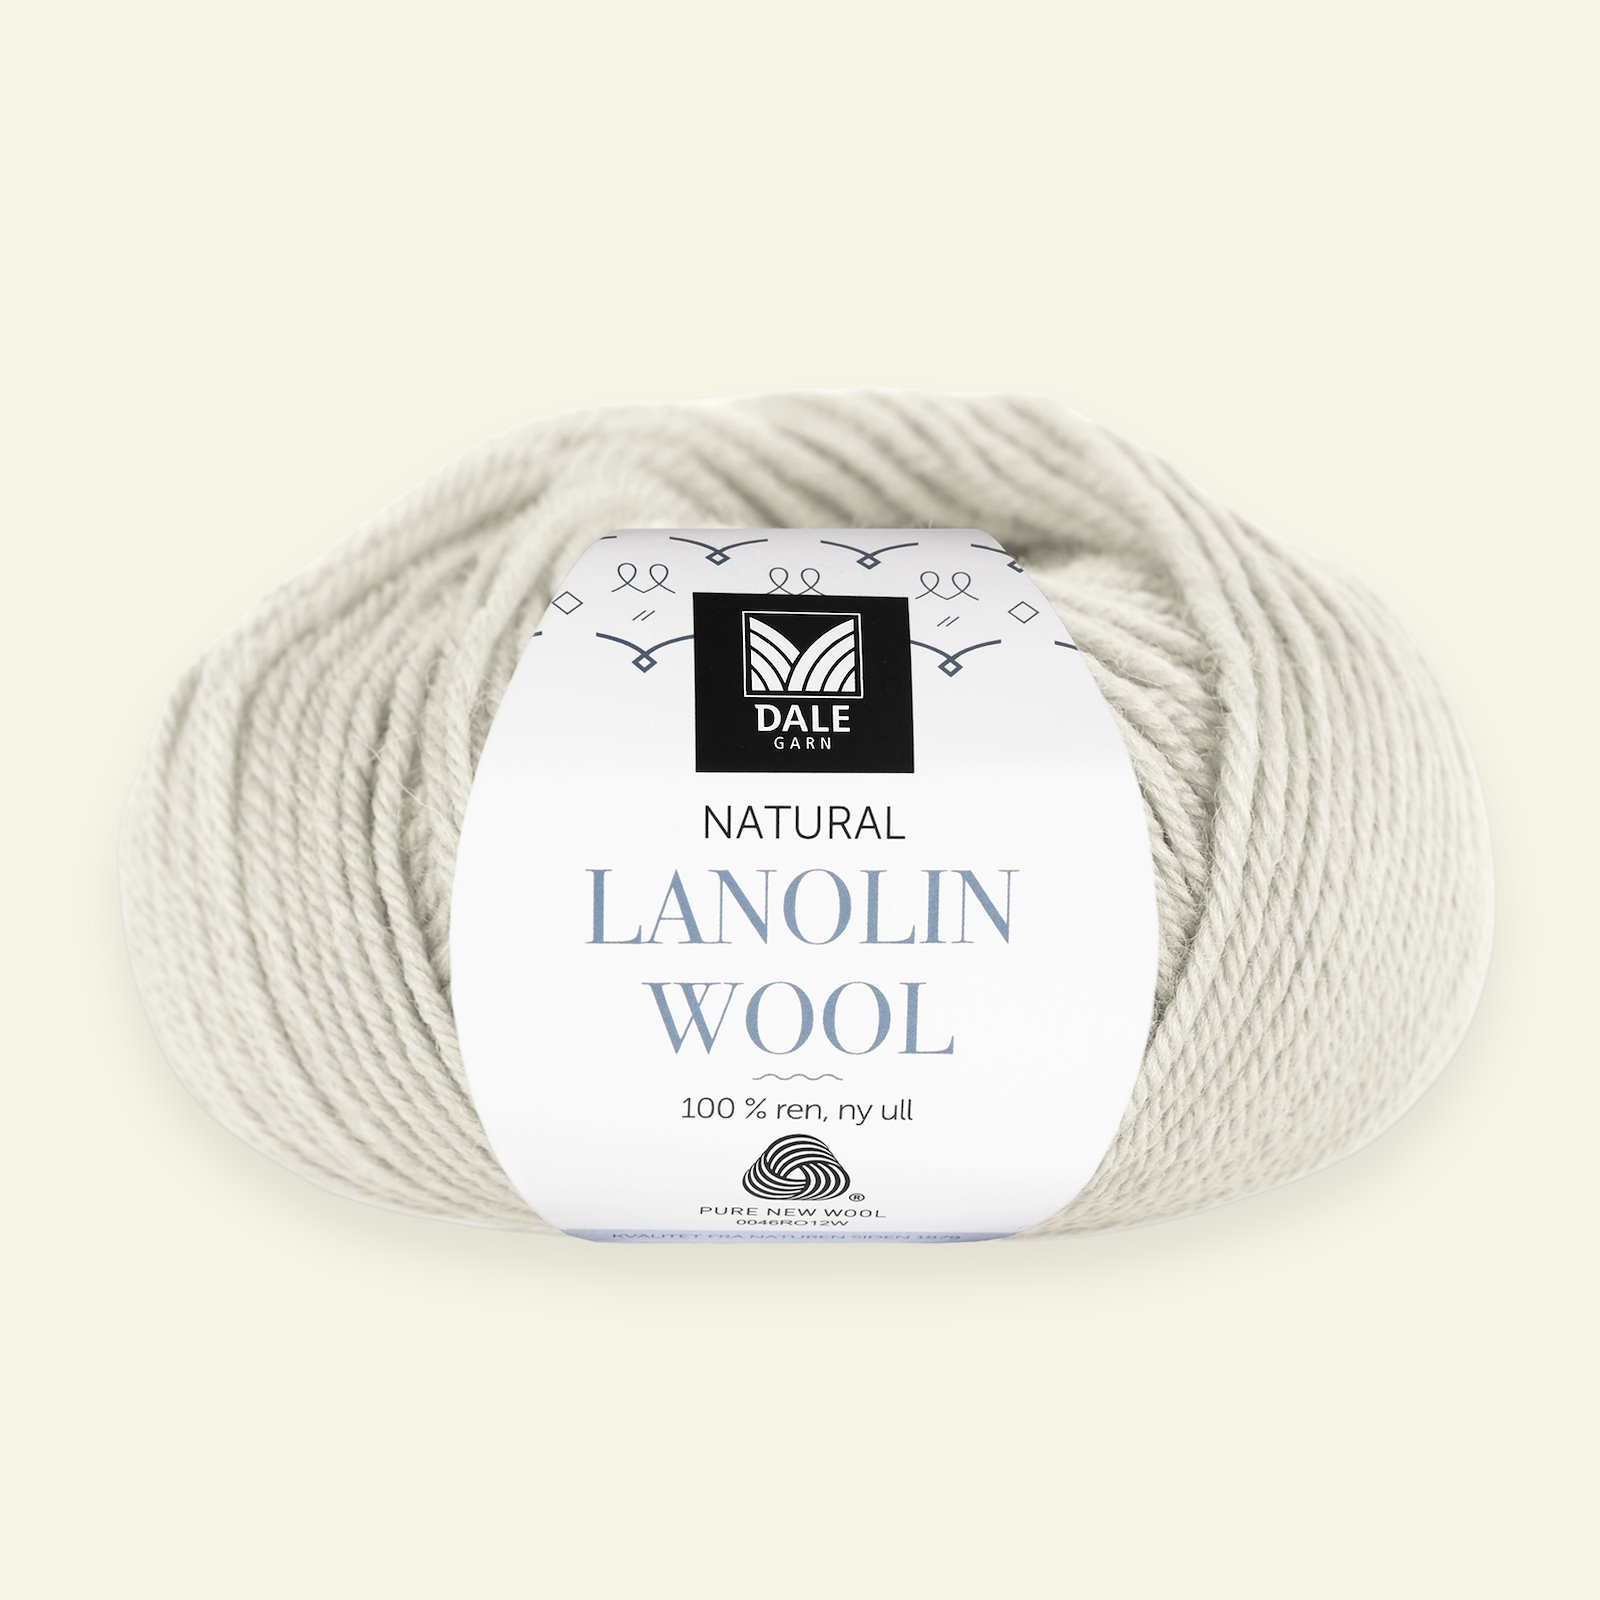 Dale Garn, 100% uldgarn "Lanolin Wool", kit (1444) 90000295_pack